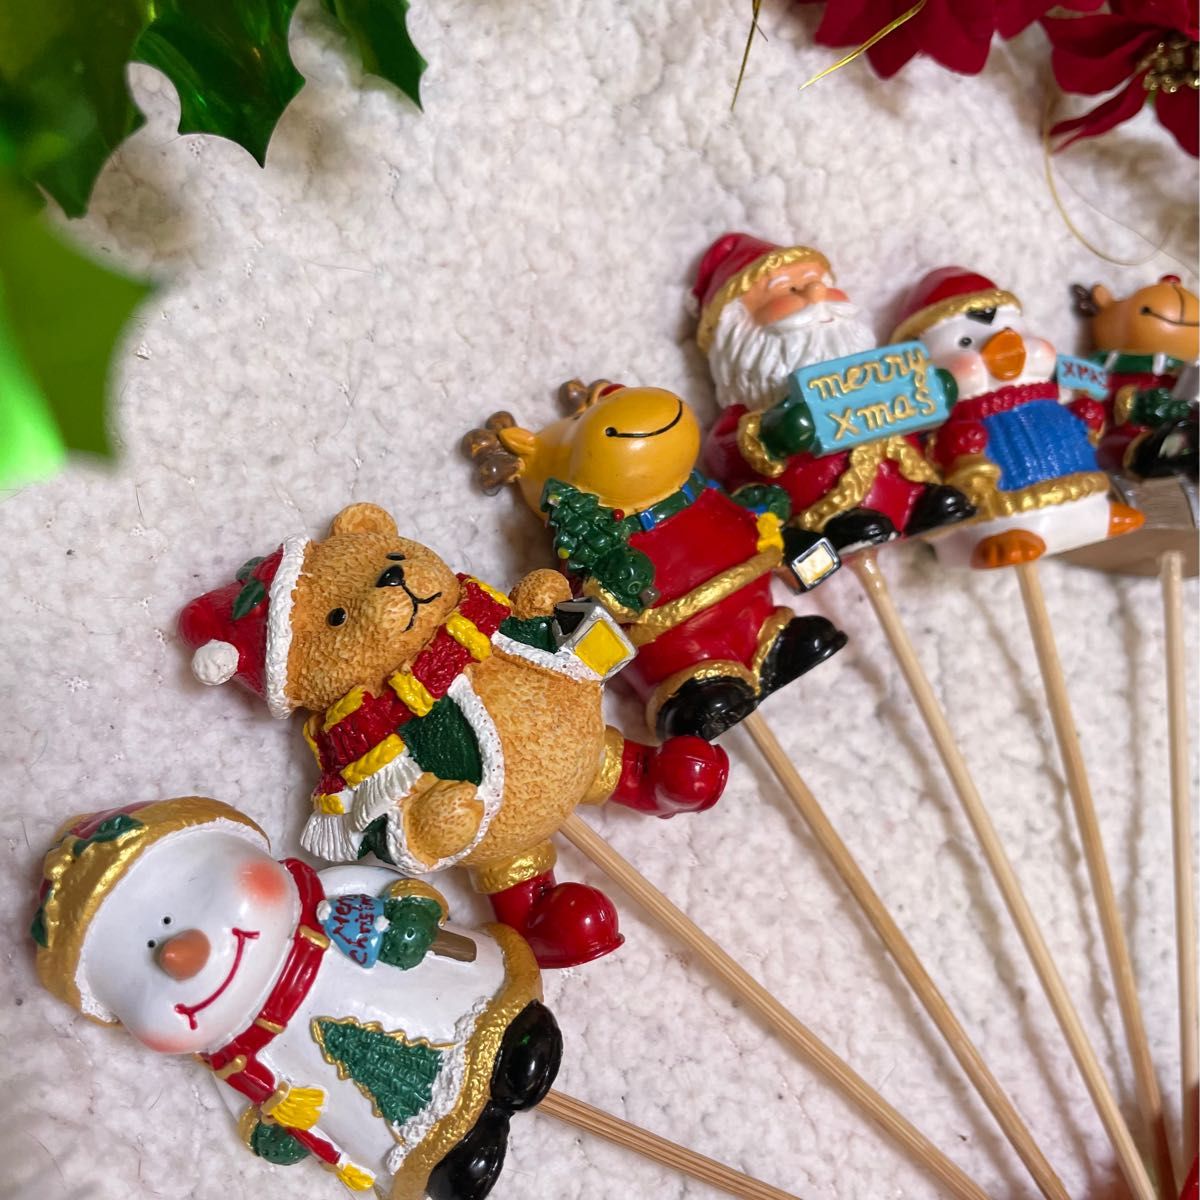 25 クリスマスピック ガーデンピック オブジェ 置き物 サンタ トナカイ 飾り ツリー スノーマン オーナメント グッズ 雑貨